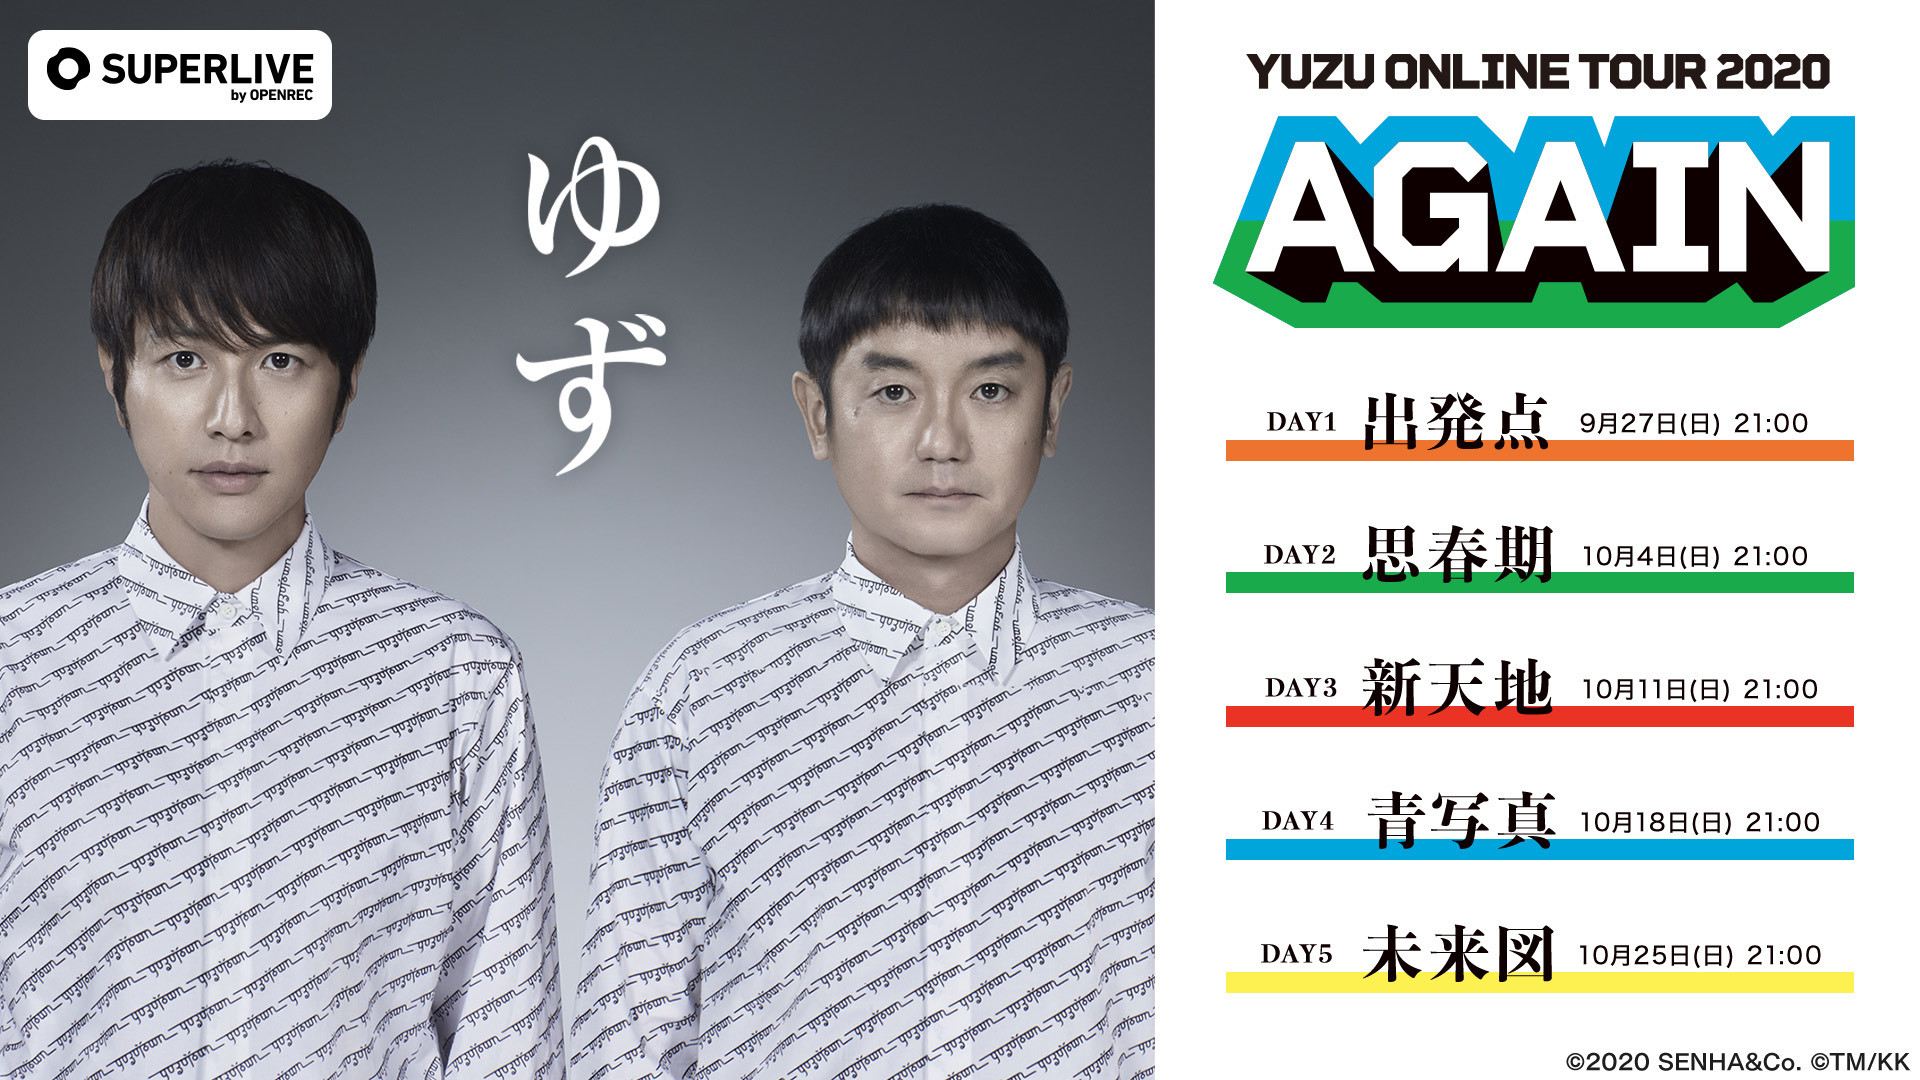 ゆず、初のオンラインツアー『YUZU ONLINE TOUR 2020 AGAIN』視聴券の一般販売が開始 | SPICE - エンタメ特化型